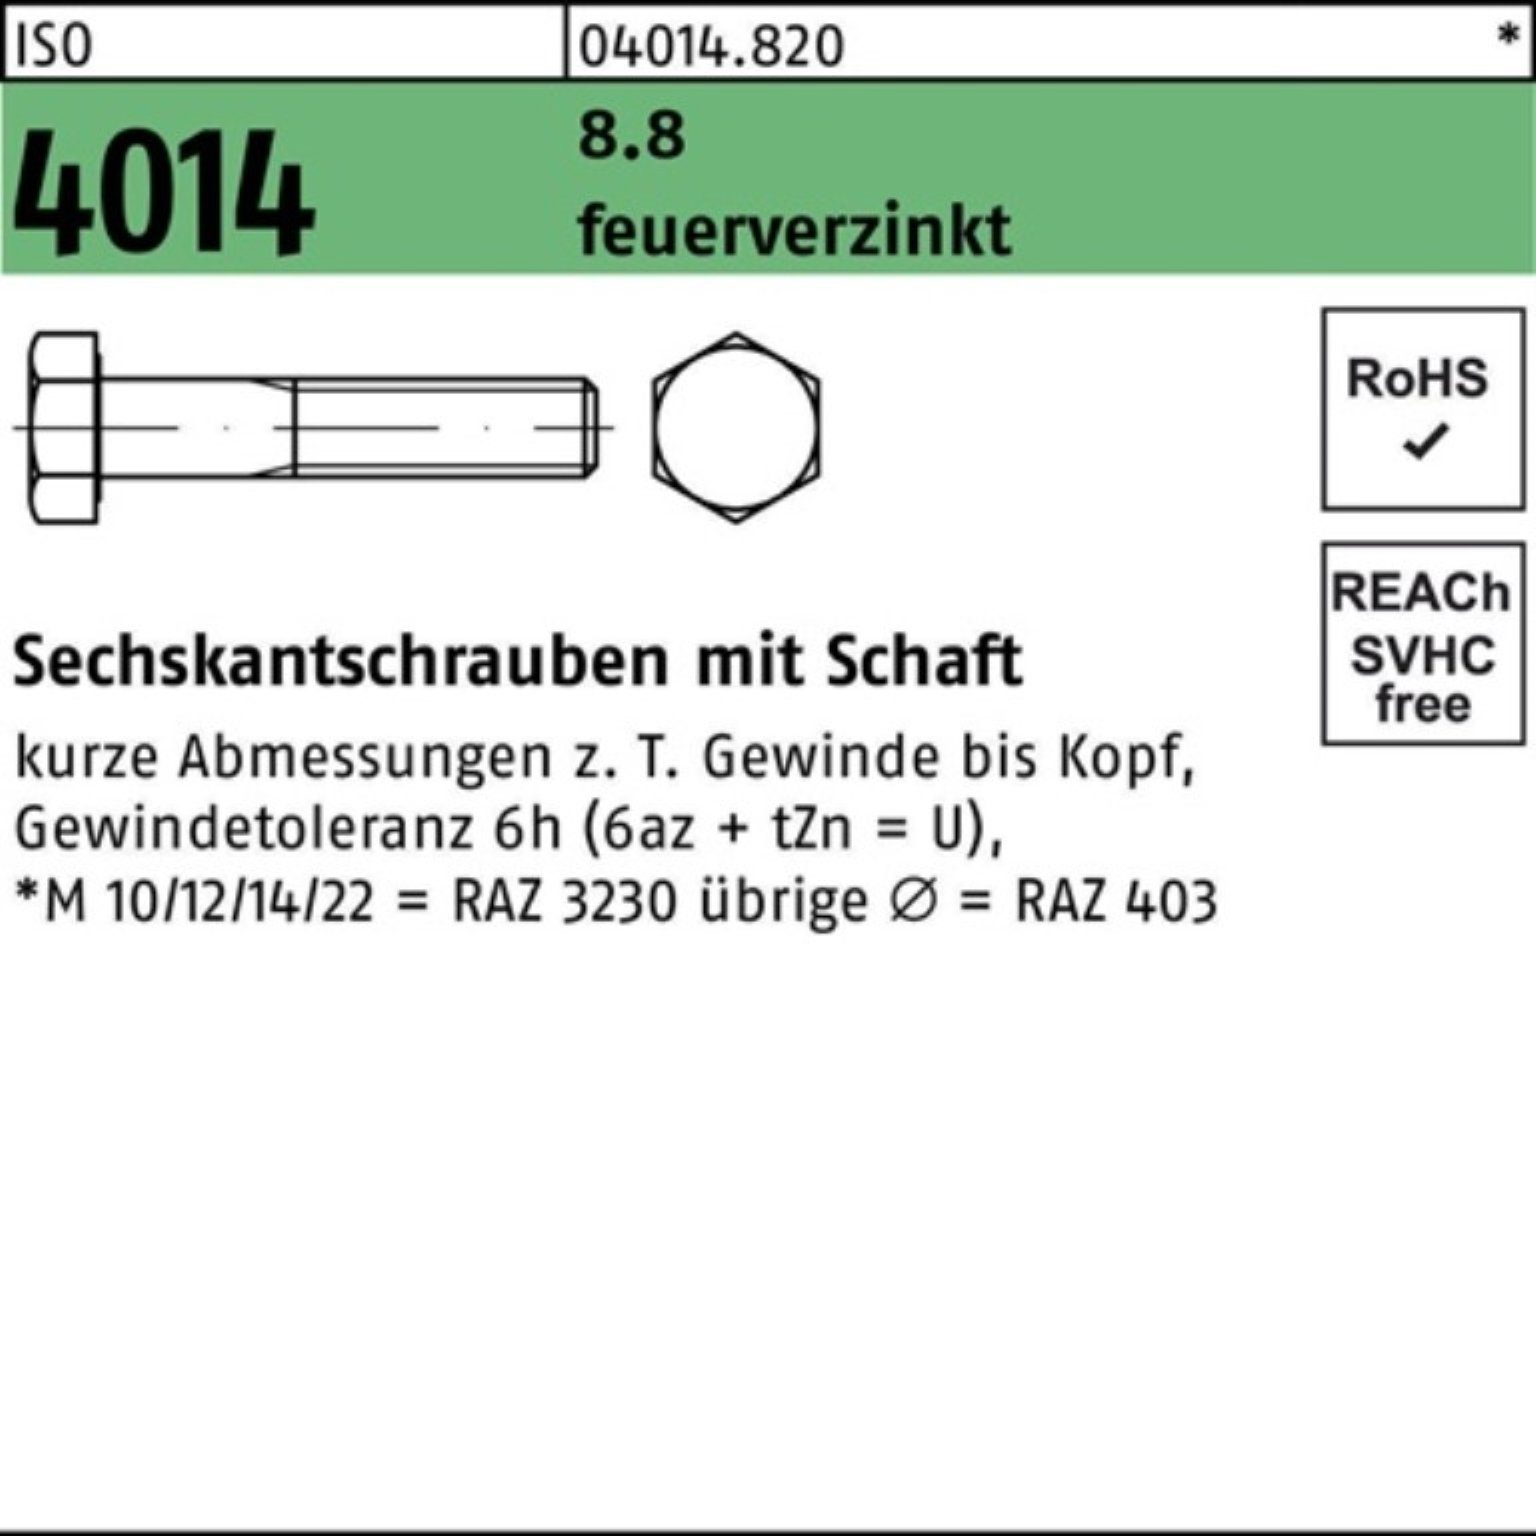 Bufab Sechskantschraube 100er Pack Sechskantschraube ISO 4014 Schaft M20x 220 8.8 feuerverz. 1